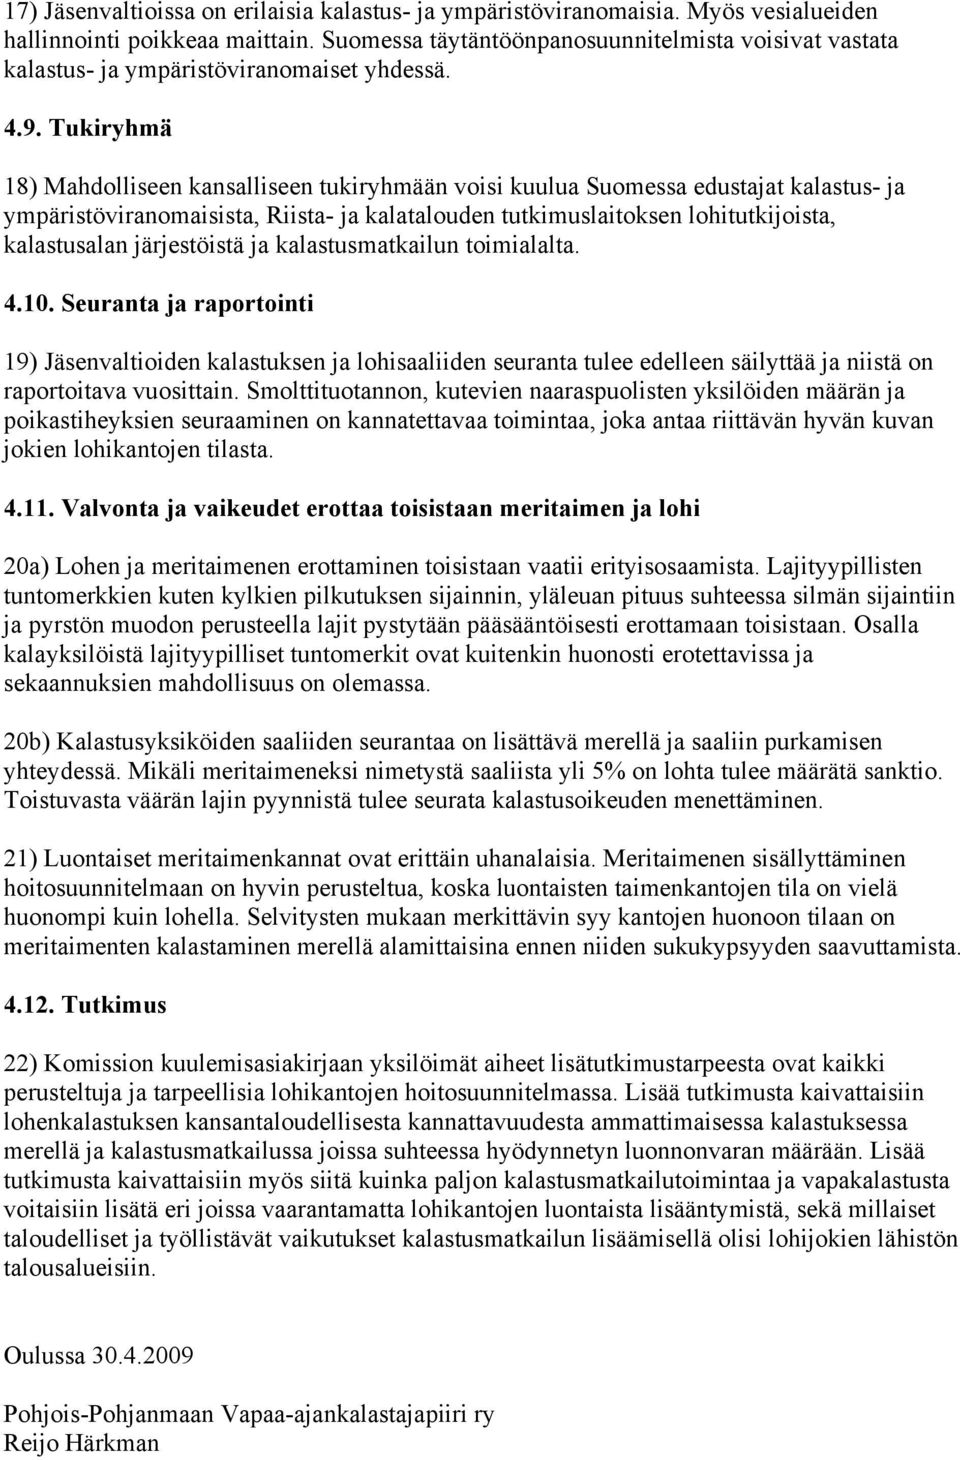 Tukiryhmä 18) Mahdolliseen kansalliseen tukiryhmään voisi kuulua Suomessa edustajat kalastus- ja ympäristöviranomaisista, Riista- ja kalatalouden tutkimuslaitoksen lohitutkijoista, kalastusalan